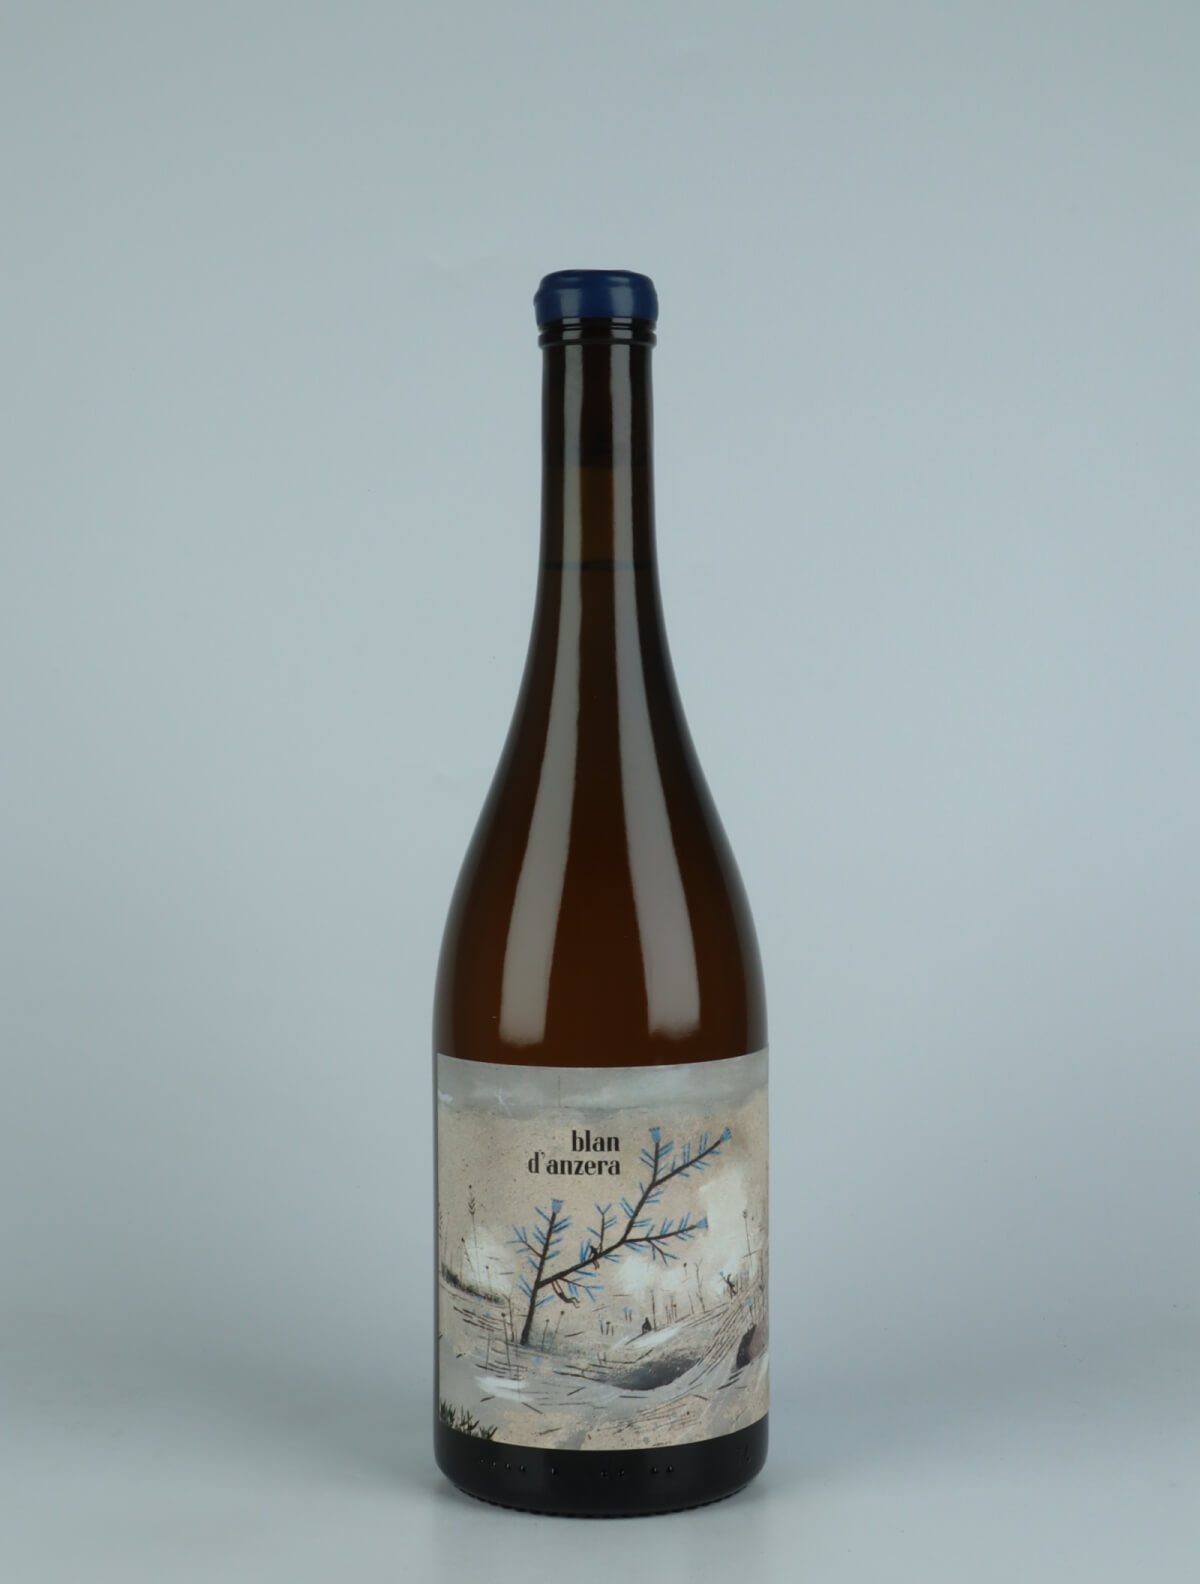 A bottle 2022 Blan d'Anzera Orange wine from Jordi Llorens, Catalonia in Spain